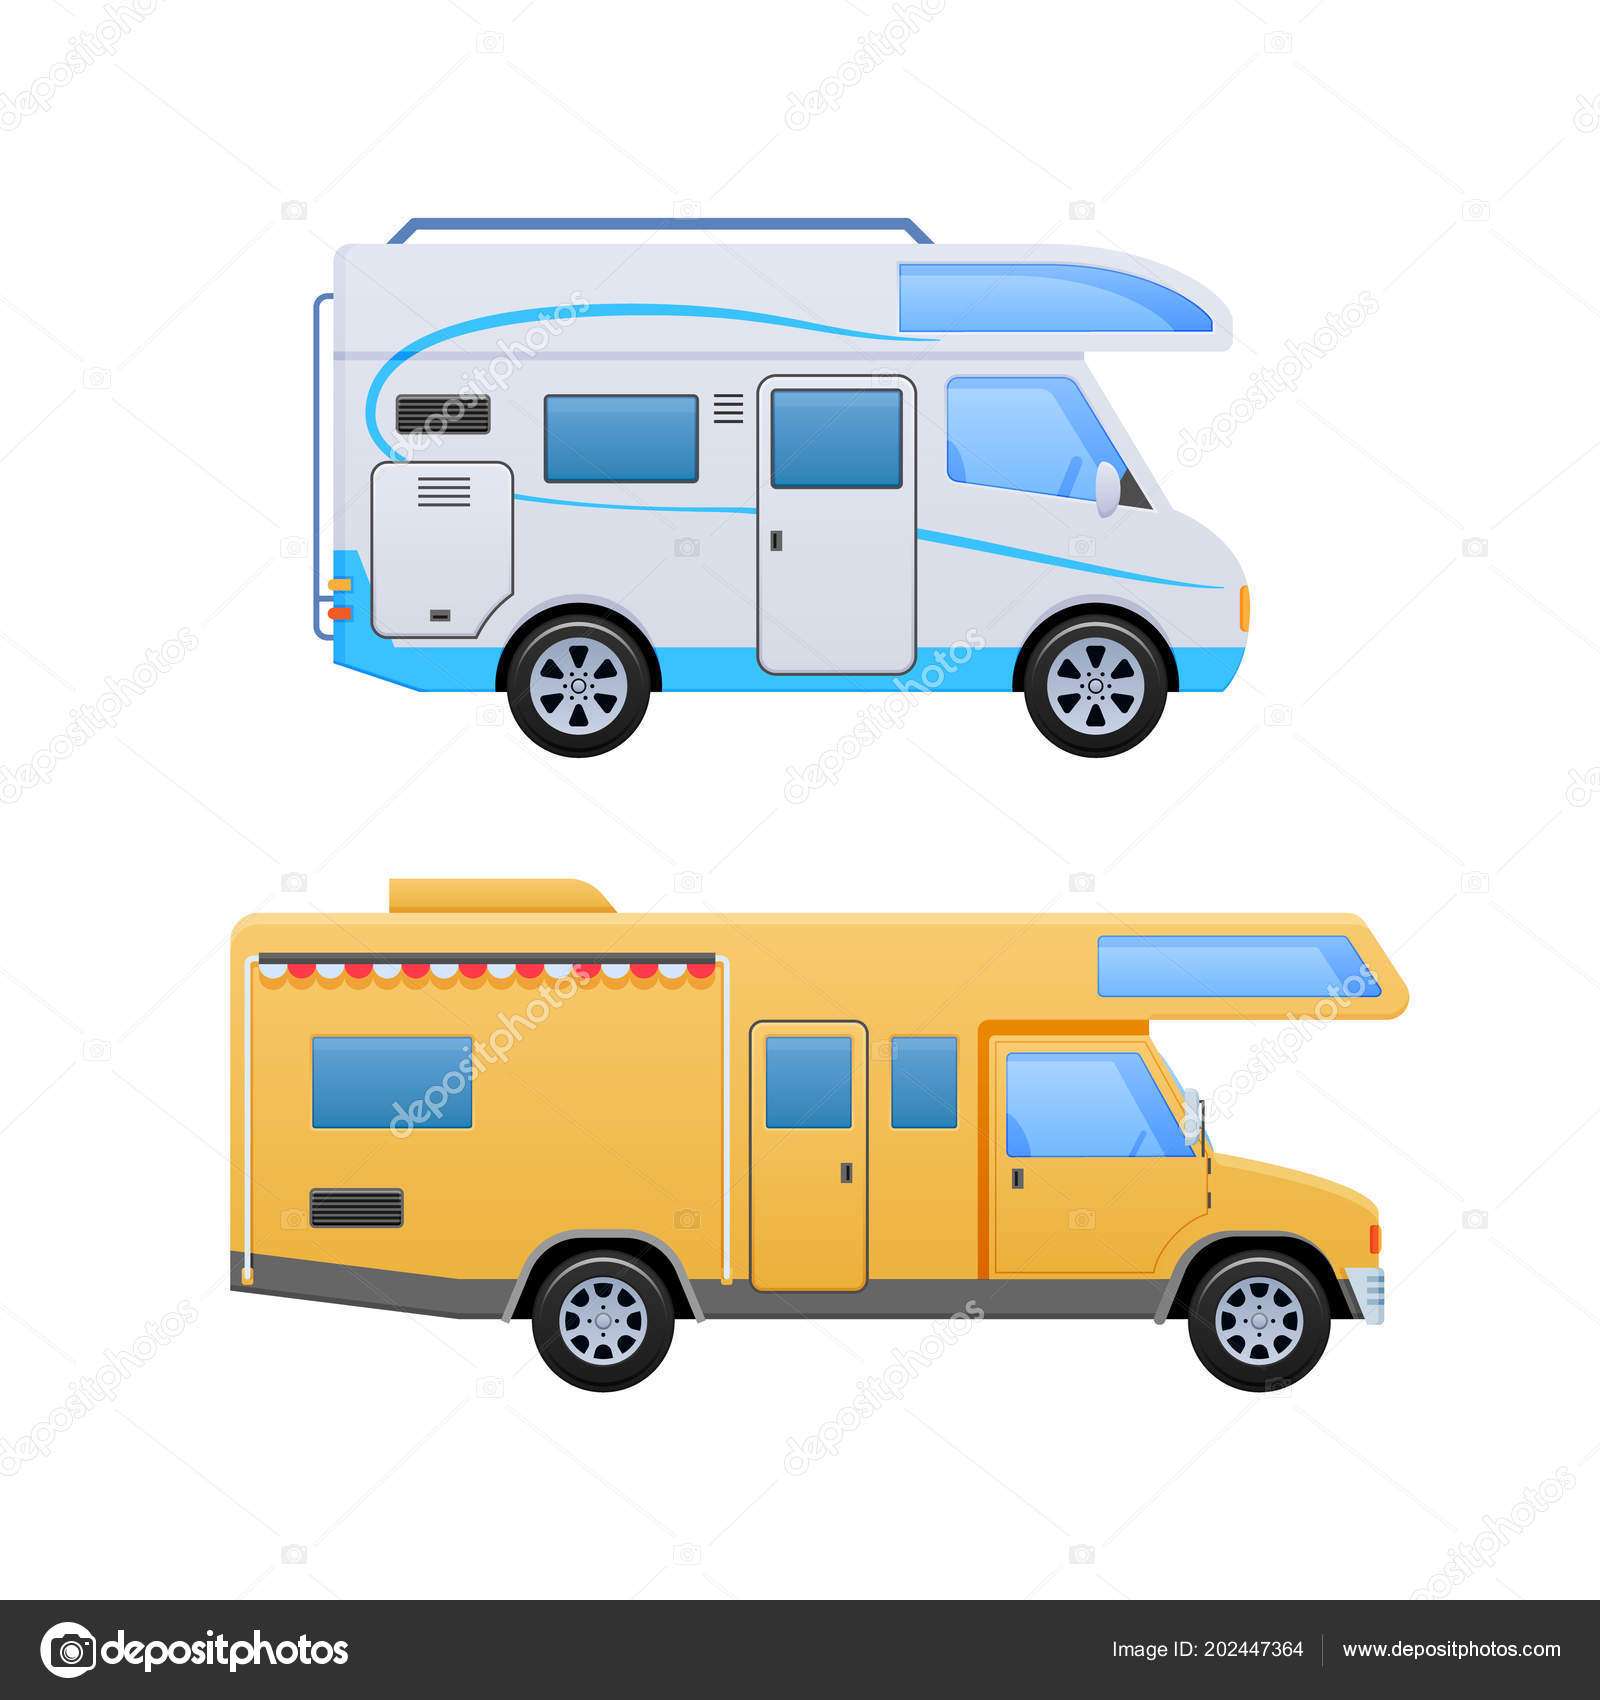 car shop vans